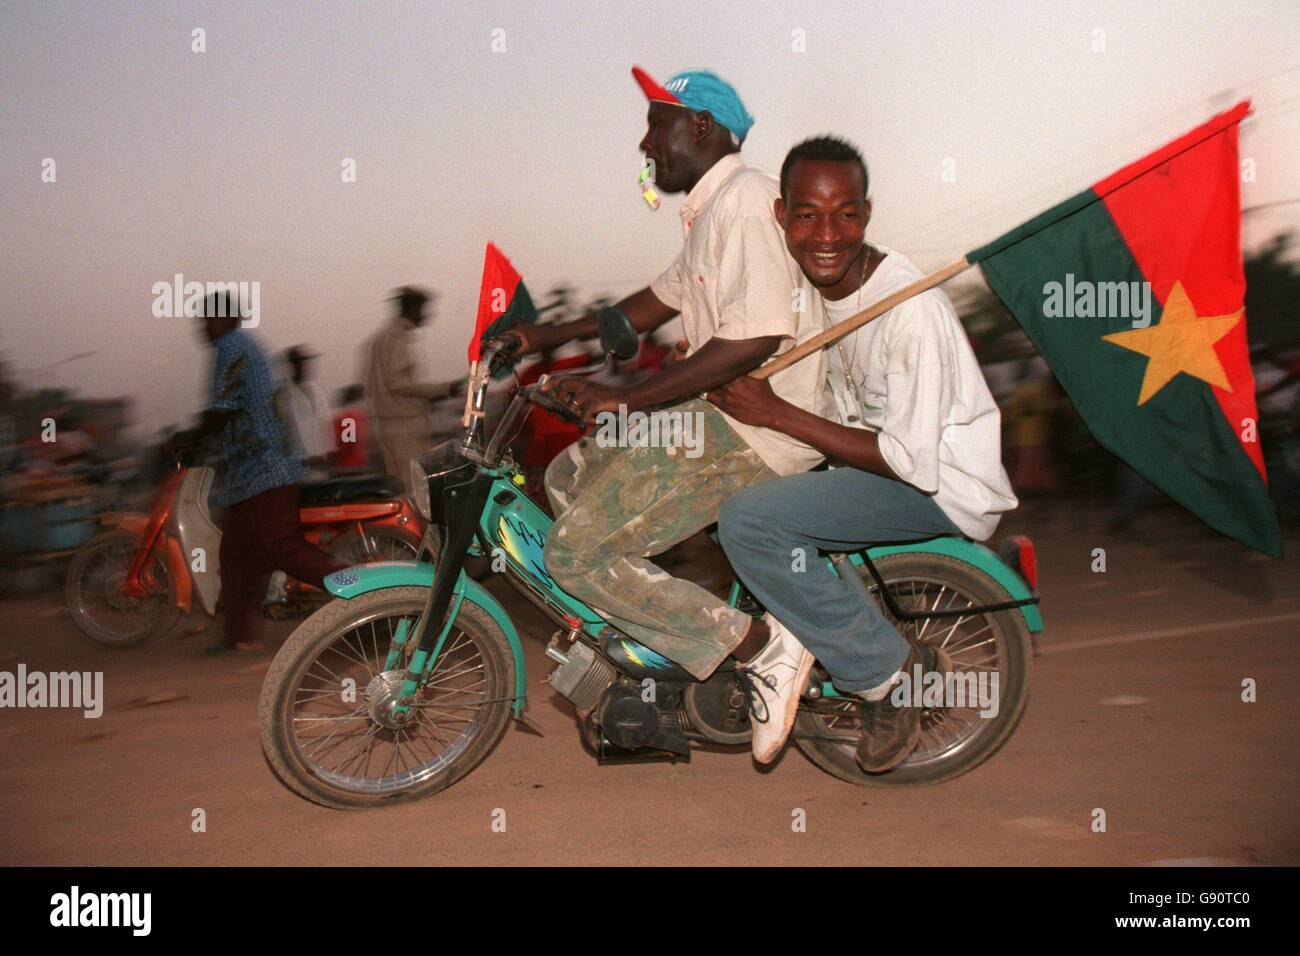 Football - coupe des nations africaines - Burkina Faso / Guinée.Les fans du Burkina Faso arrivent au match à moto Banque D'Images